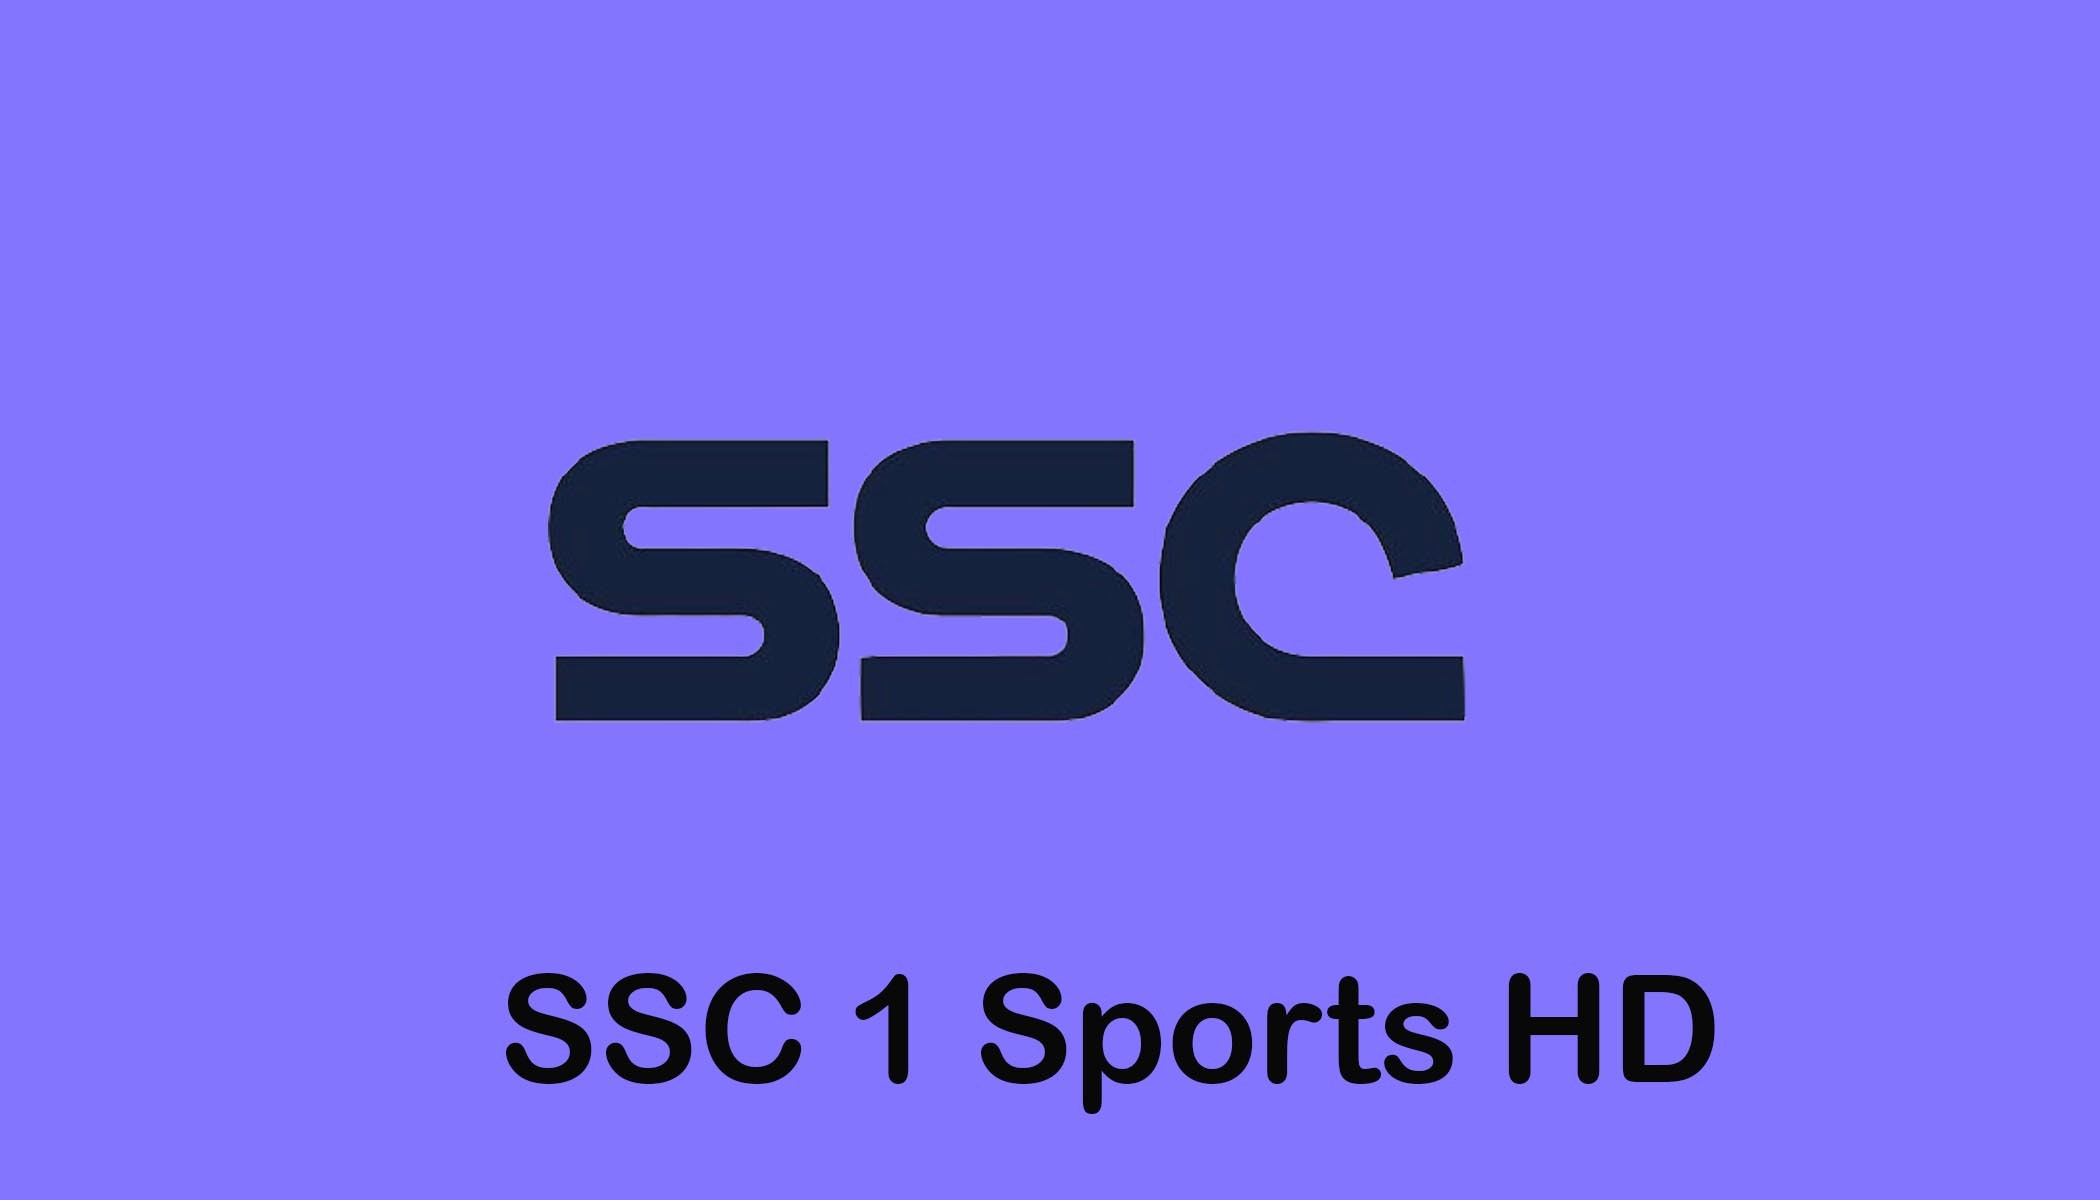 الآن أضبط تردد قناة ssc الرياضية المجانية الناقلة لمباراة الفتح والتعاون اليوم في منافسات دوري روشن السعودي